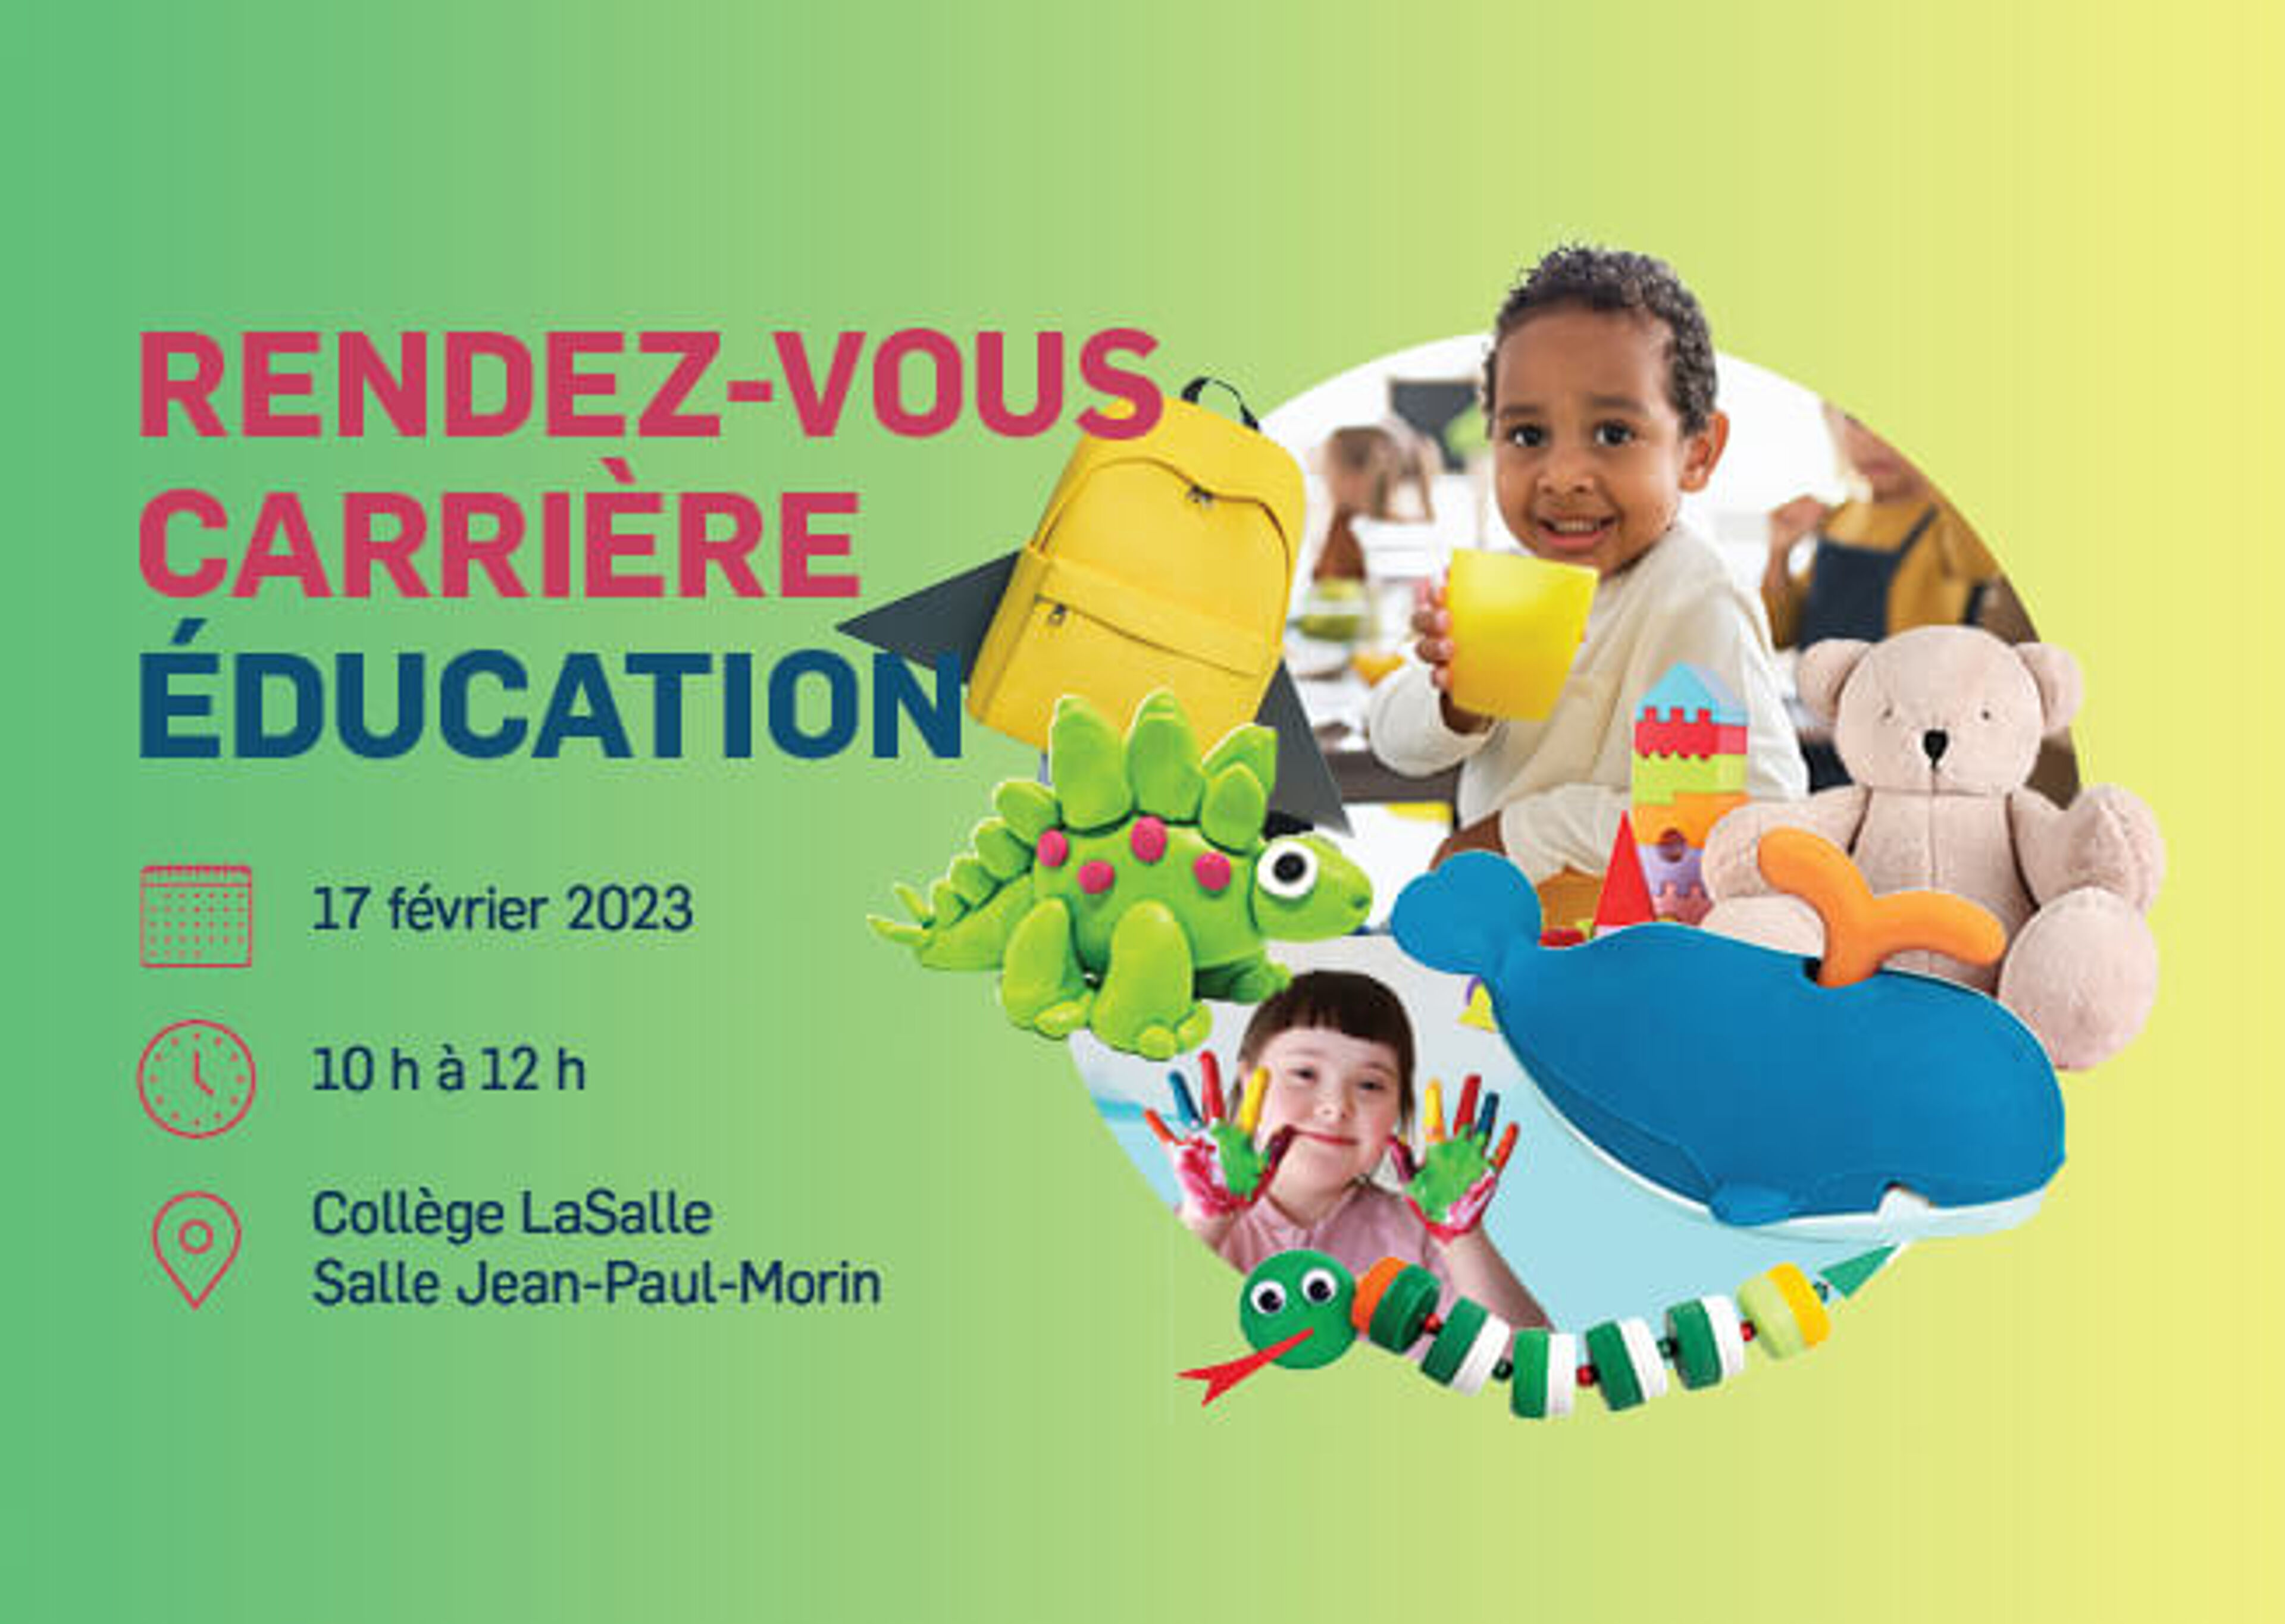 Invitation à un meetup de carrière en éducation le 17 février 2023, présentant des jouets et activités pour enfants joyeux, au Collège LaSalle.